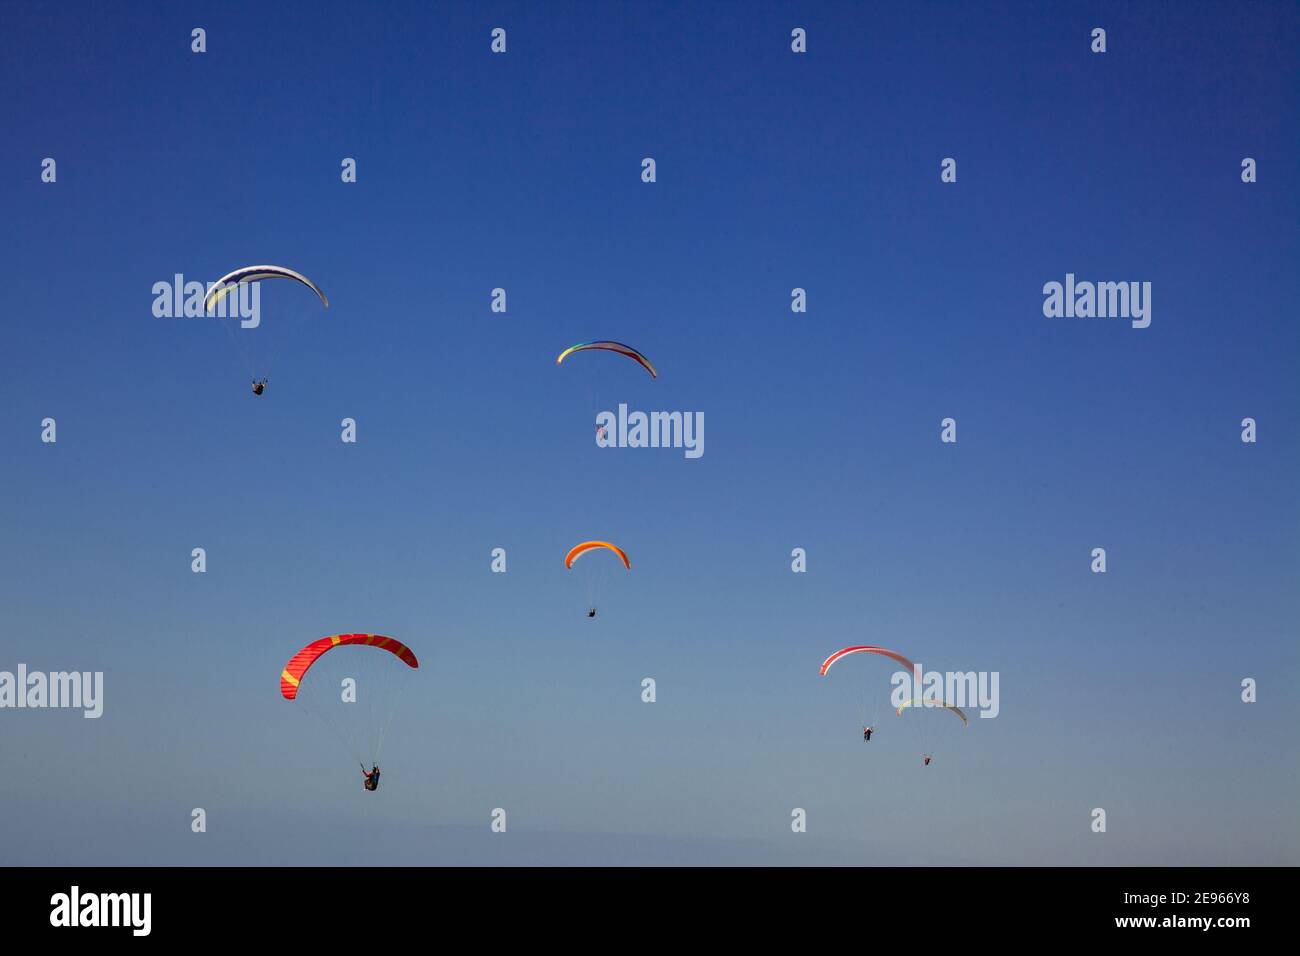 Parachute parapente bleu et rouge sur ciel bleu clair avec espace copie. Parapente contre ciel bleu Banque D'Images